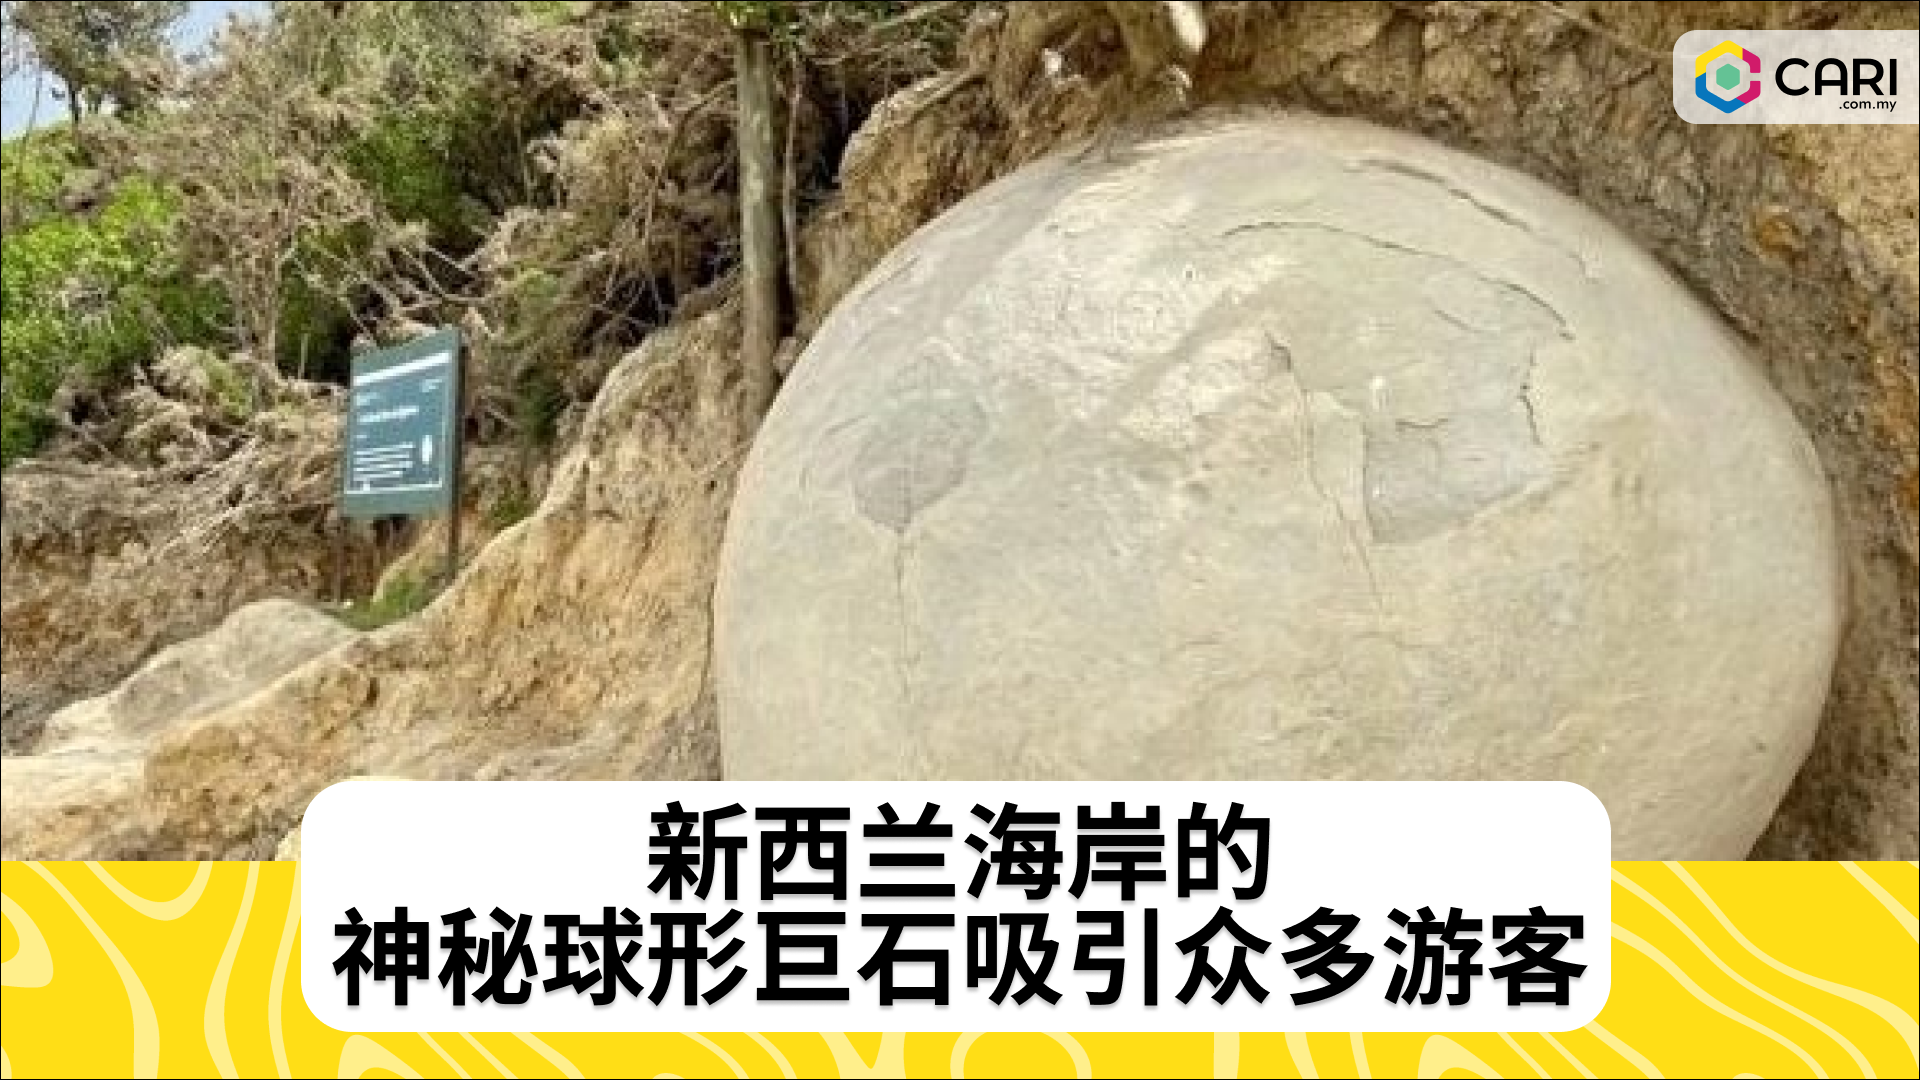 新西兰海岸的神秘球形巨石吸引众多游客